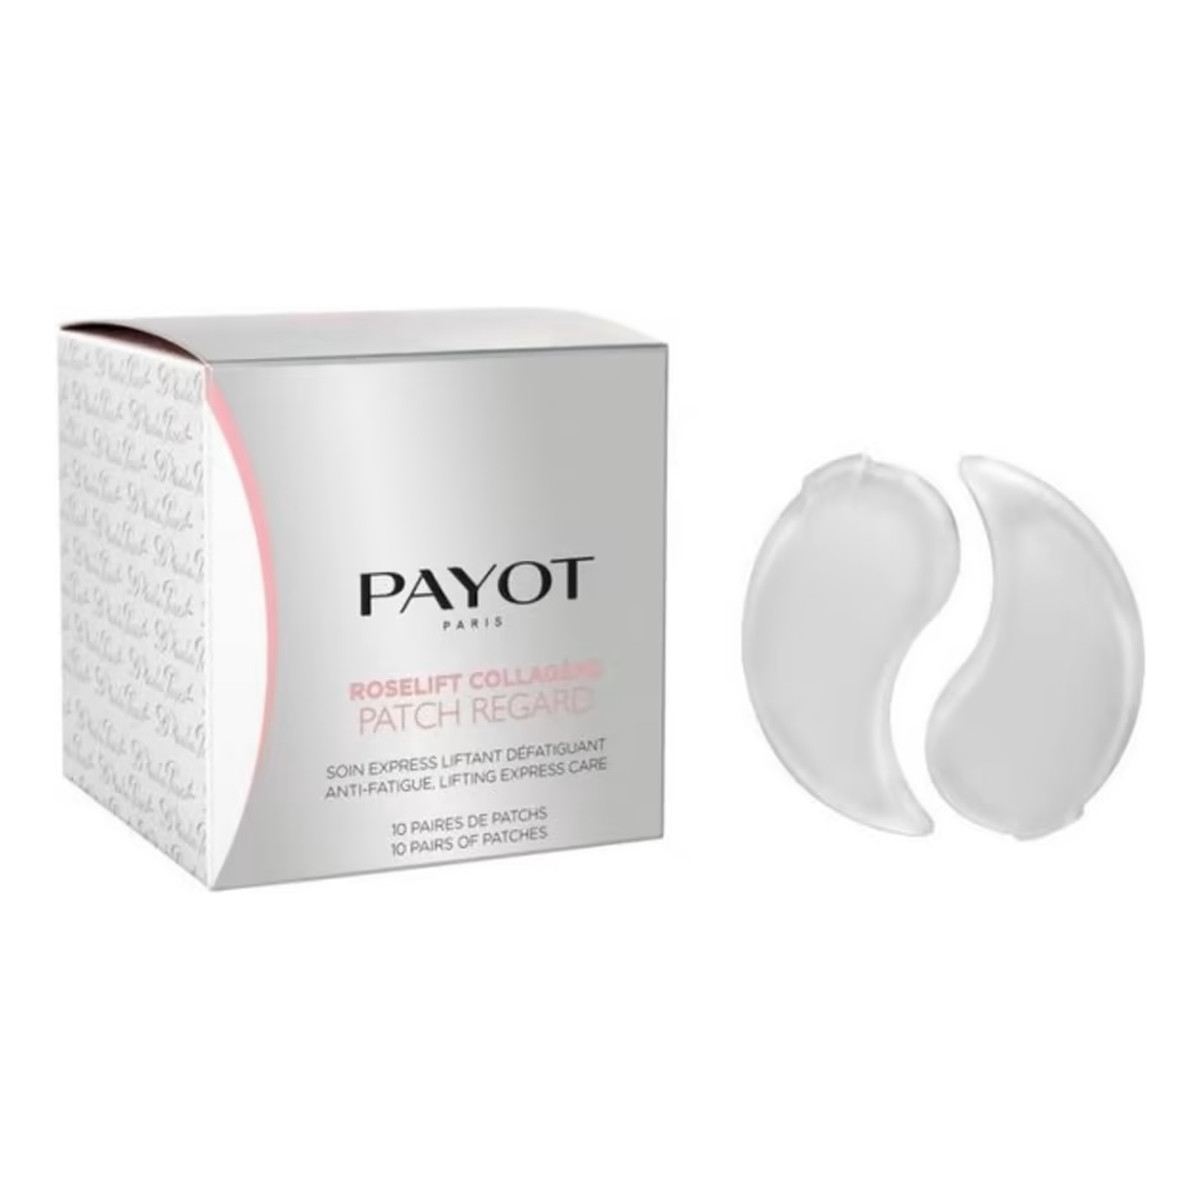 Payot Roselift collagene patch regard hydrożelowe płatki pod oczy 10szt.